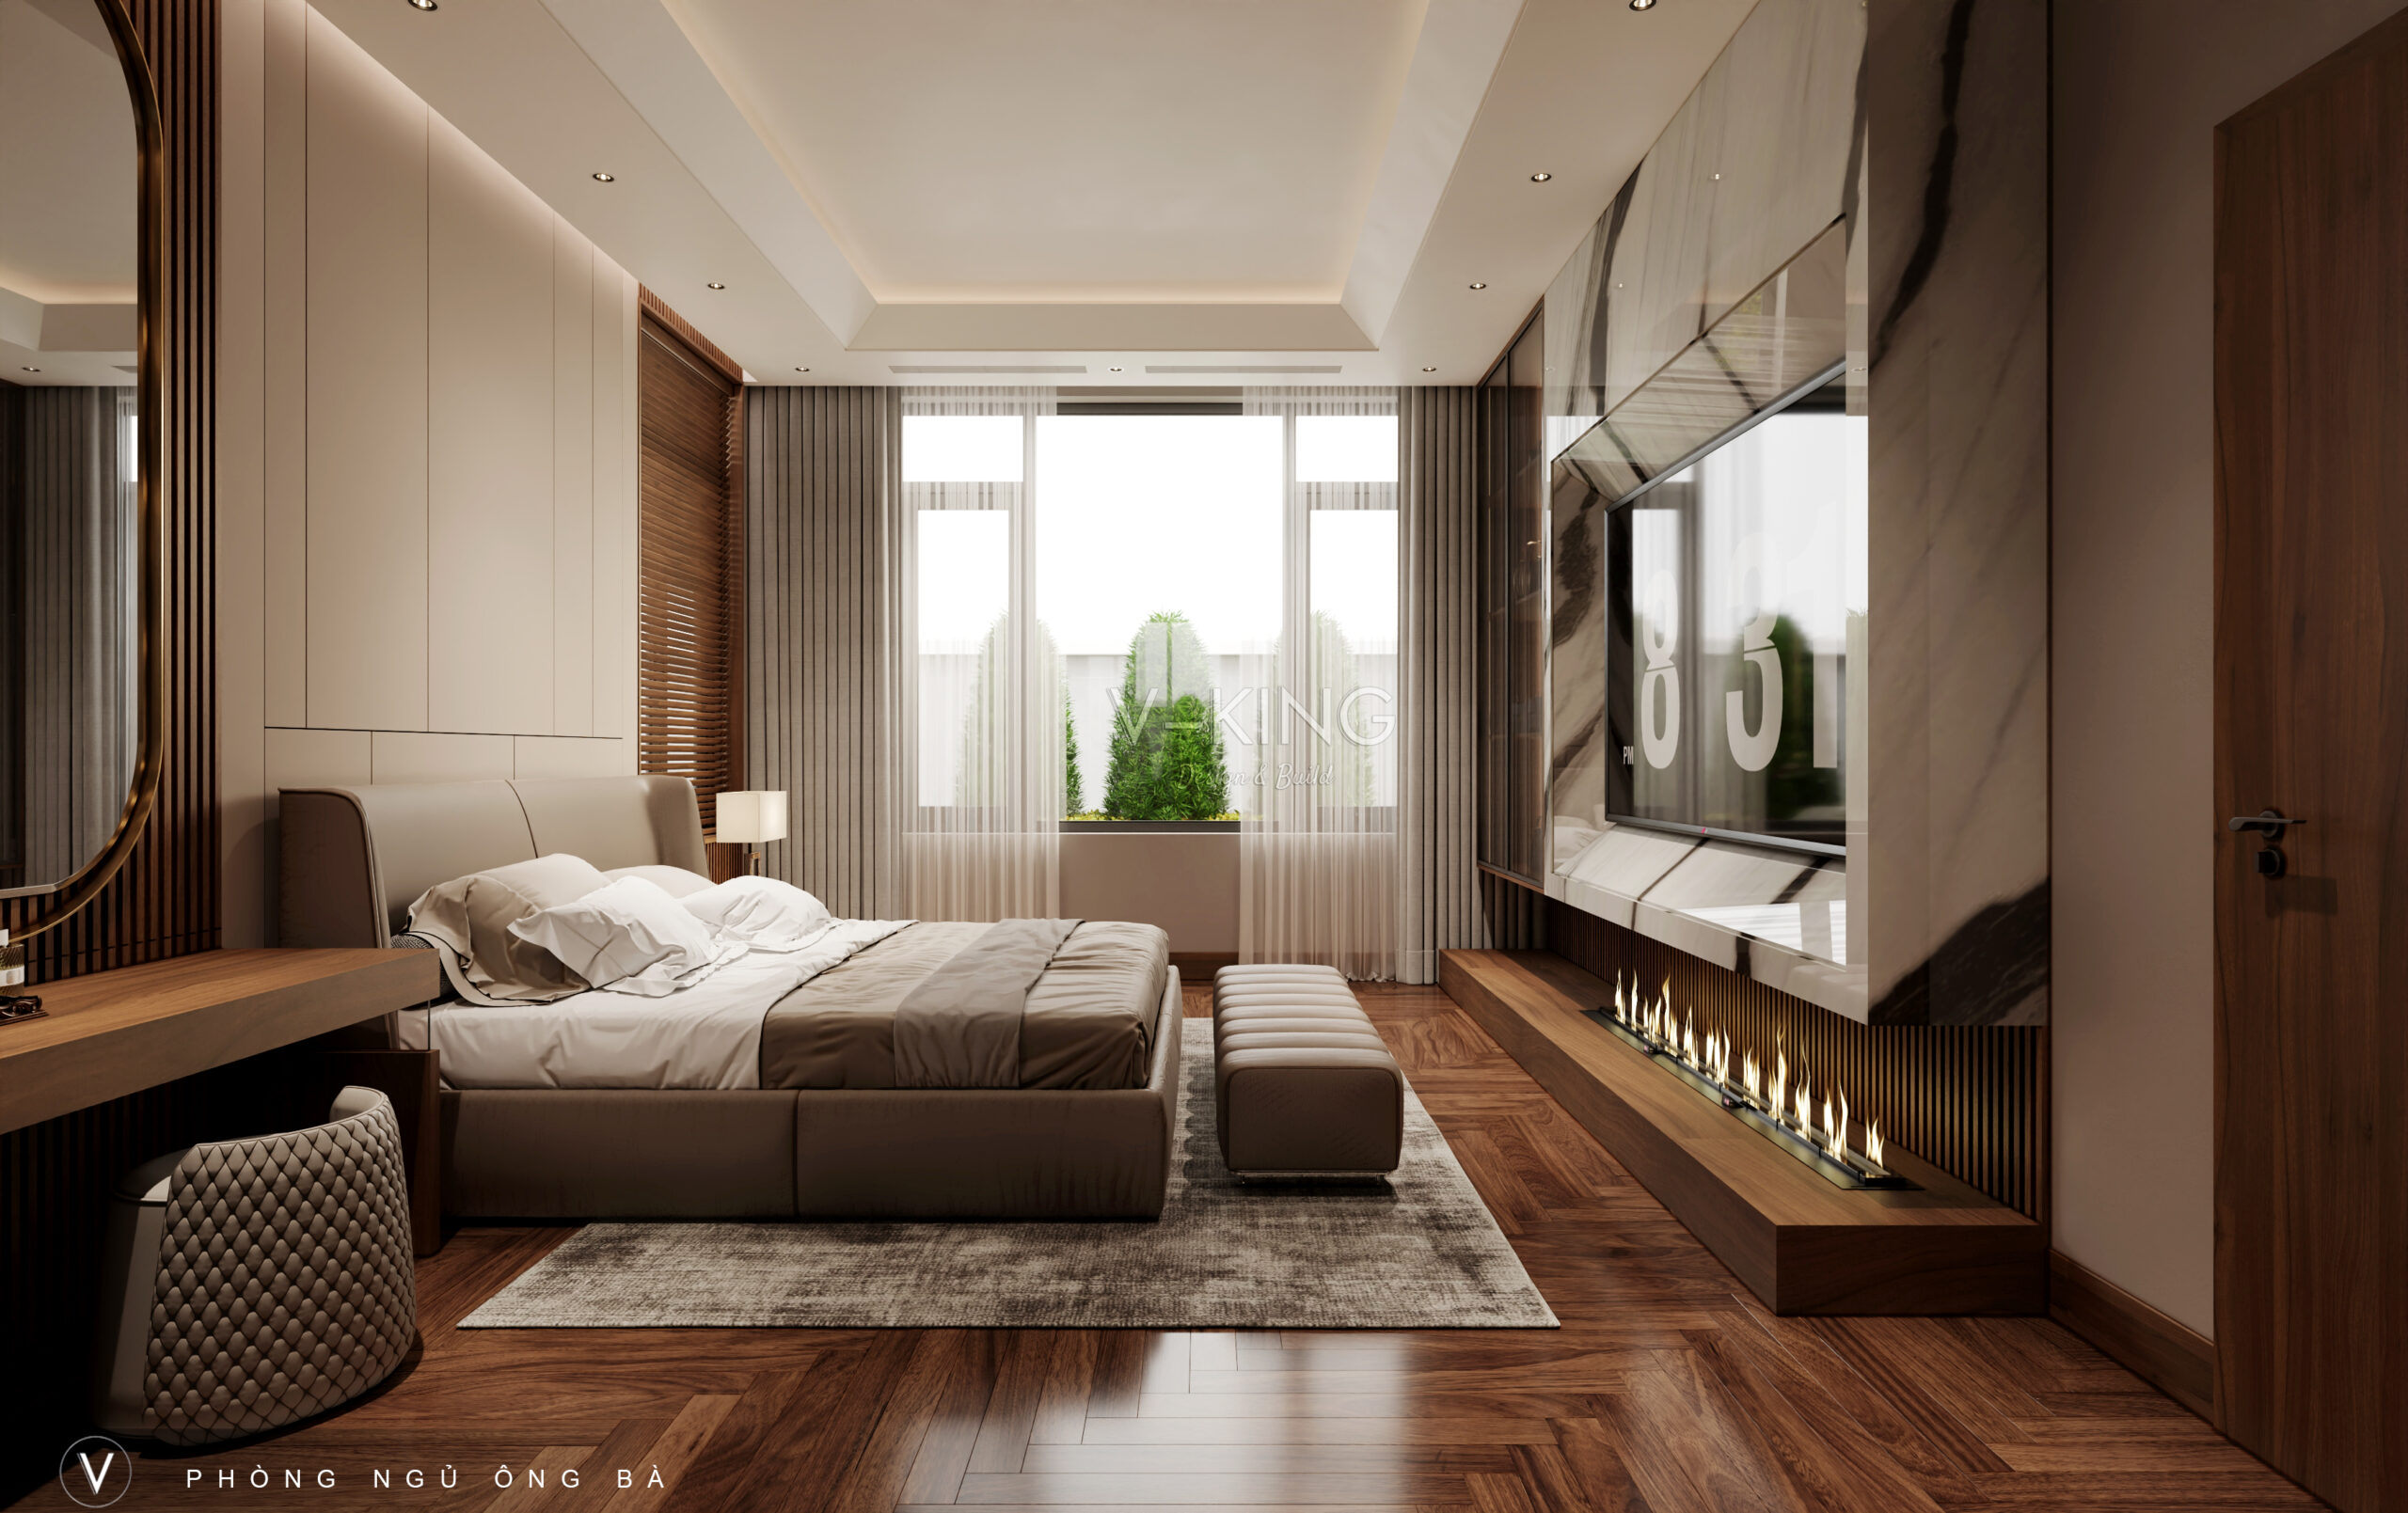 Mẫu thiết kế nội thất phòng ngủ hiện đại đẹp sang trọng